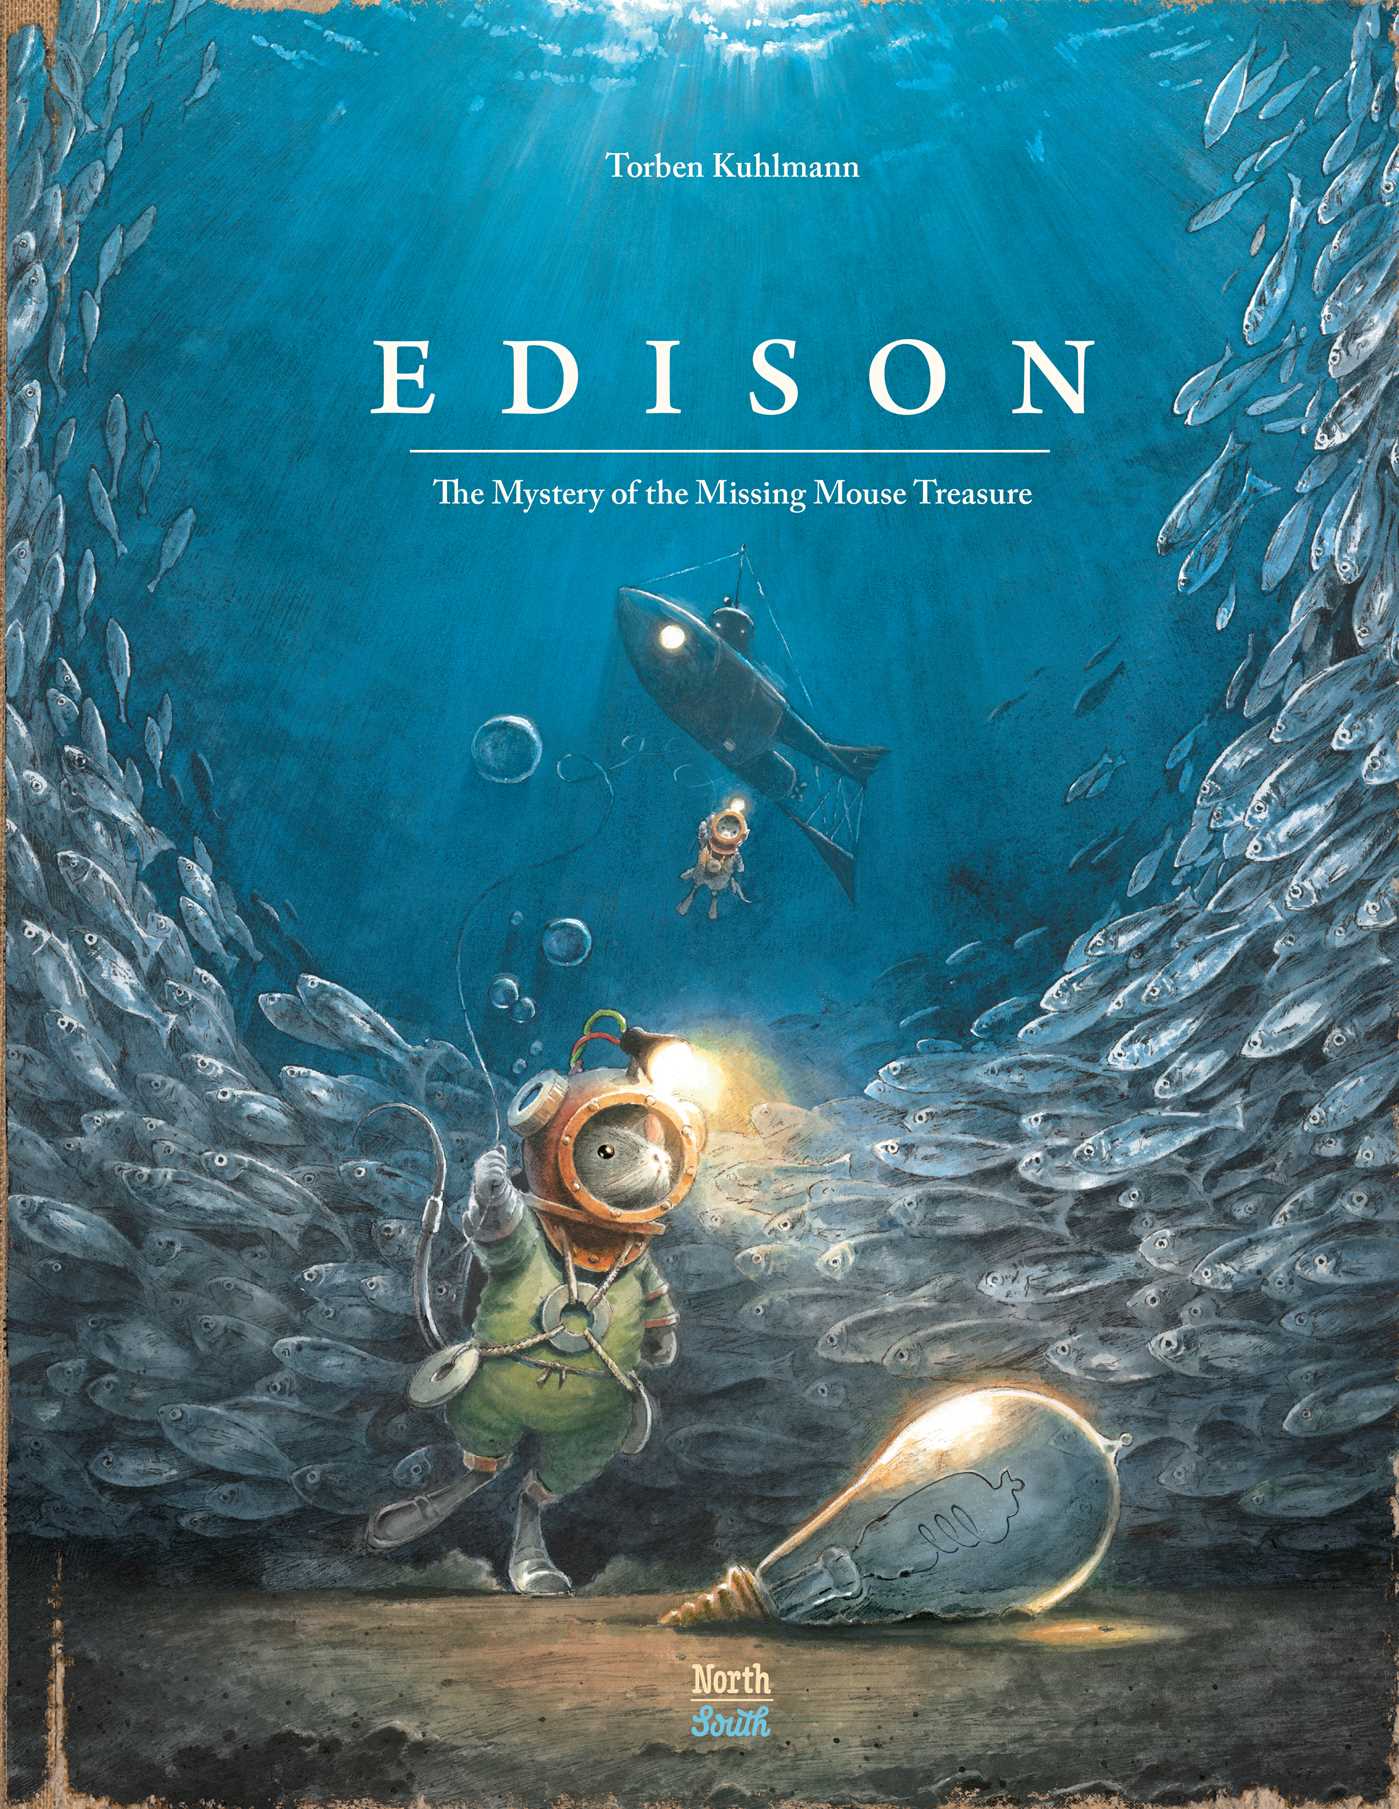 Je bekijkt nu Boekentip: Edison – Het mysterie van de muizenschat